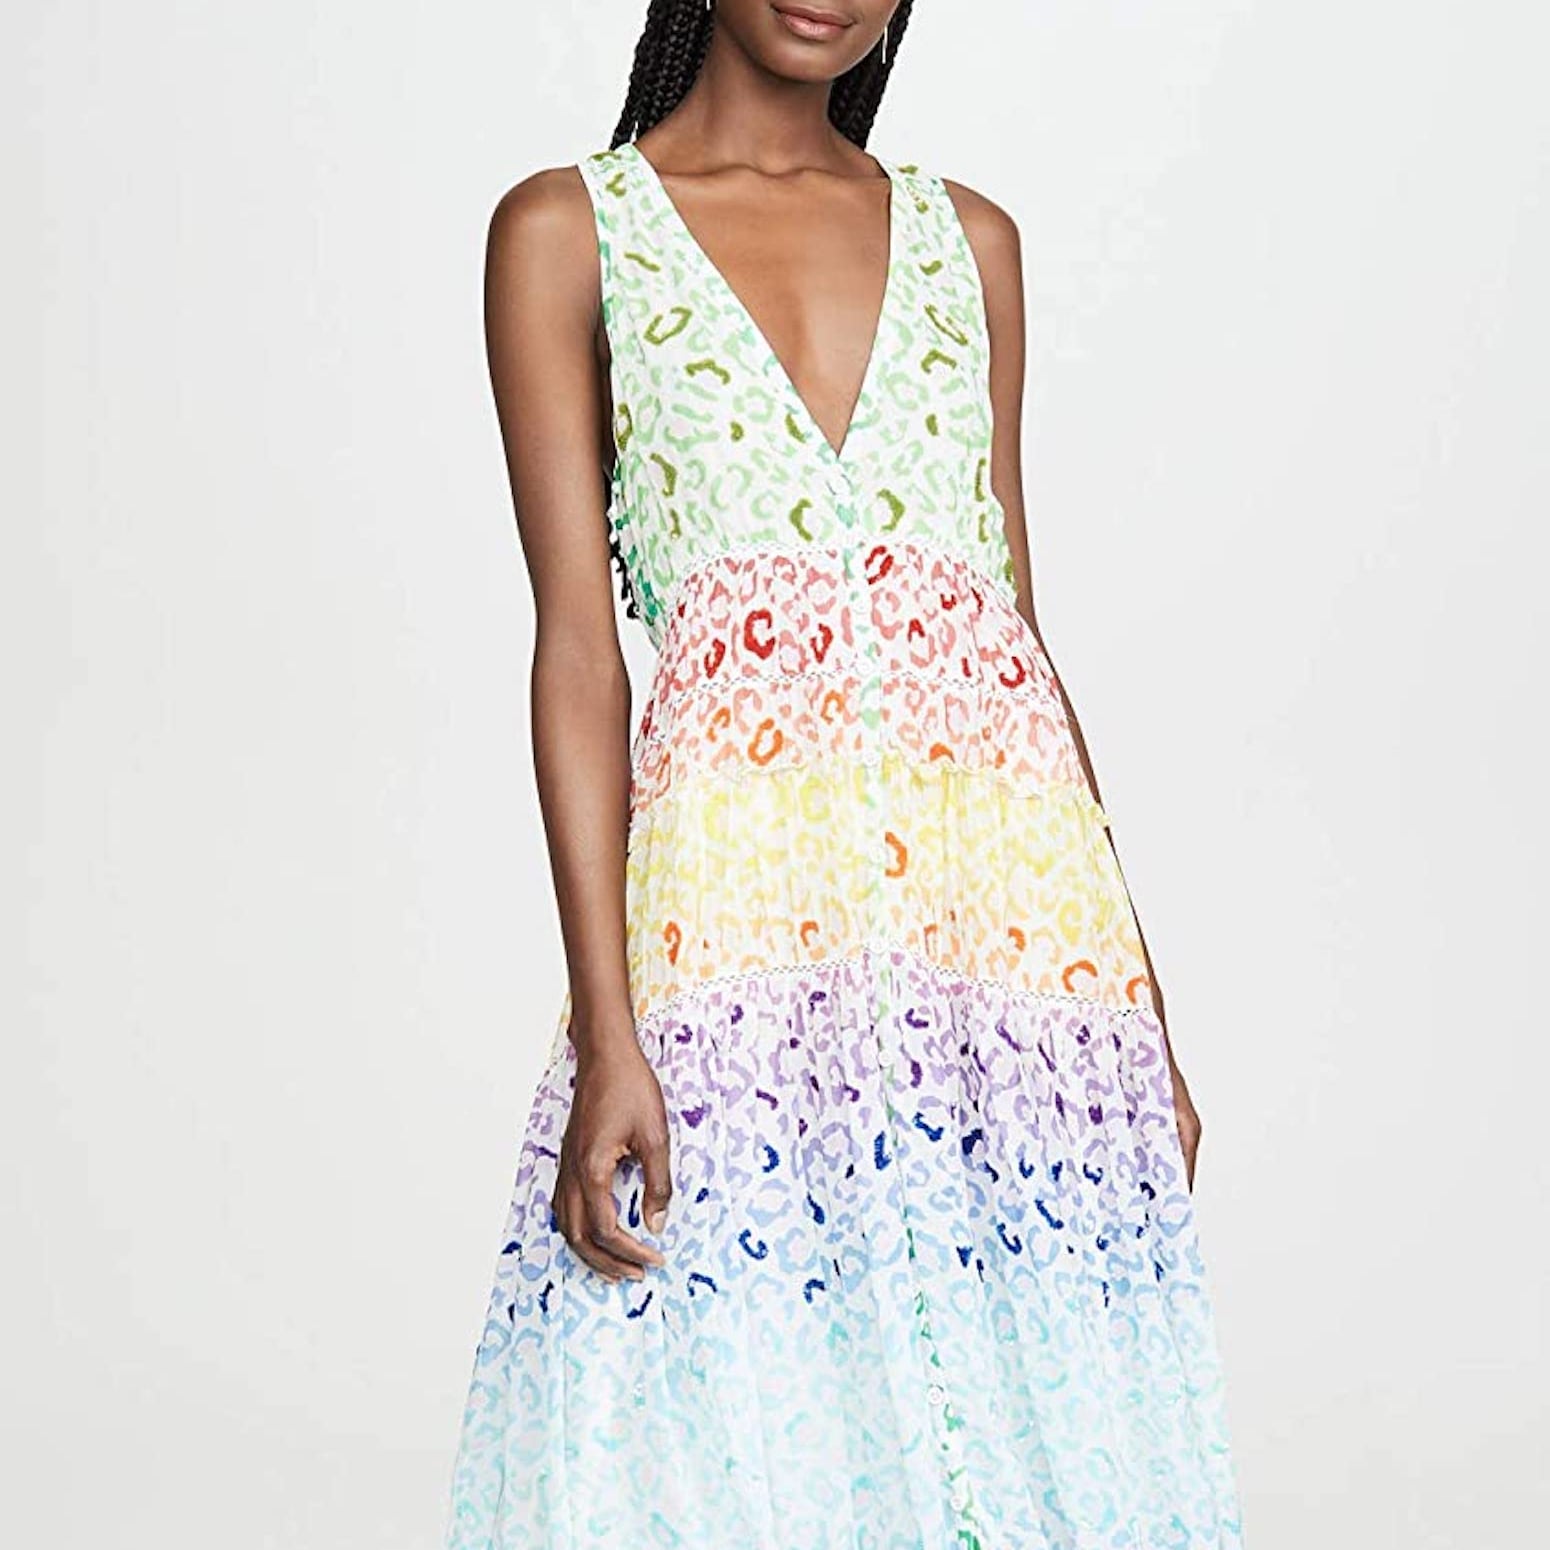 Cotton Summer Dresses Amazon Hot Sale ...